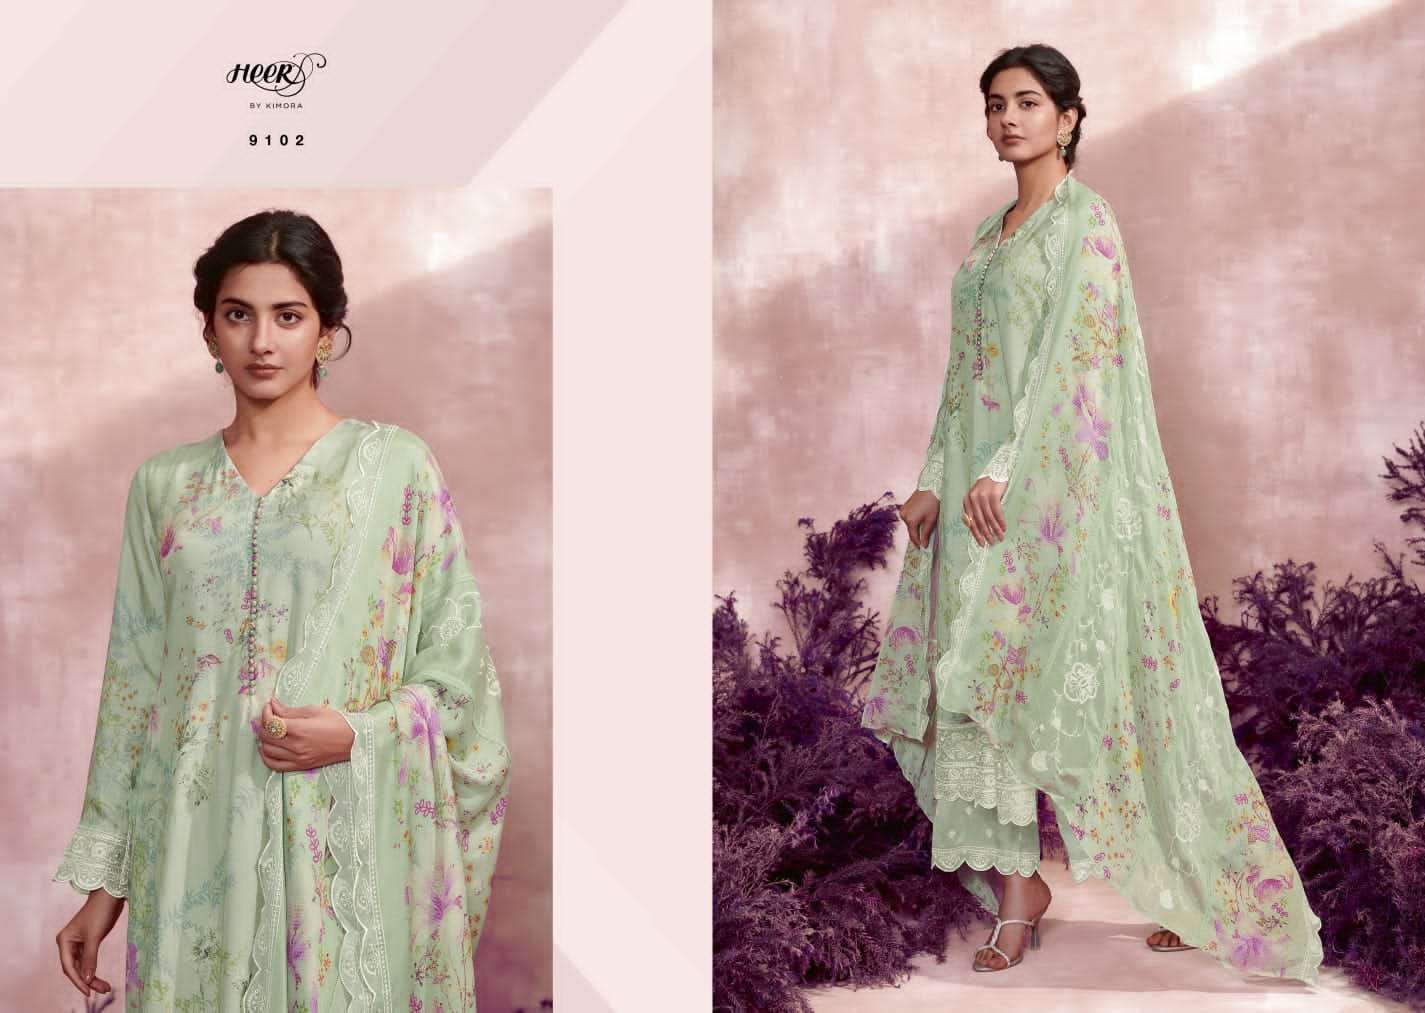 kimora noor jahan 9101-9108 series exclusive designer salwar kameez catalogue wholesale price surat 